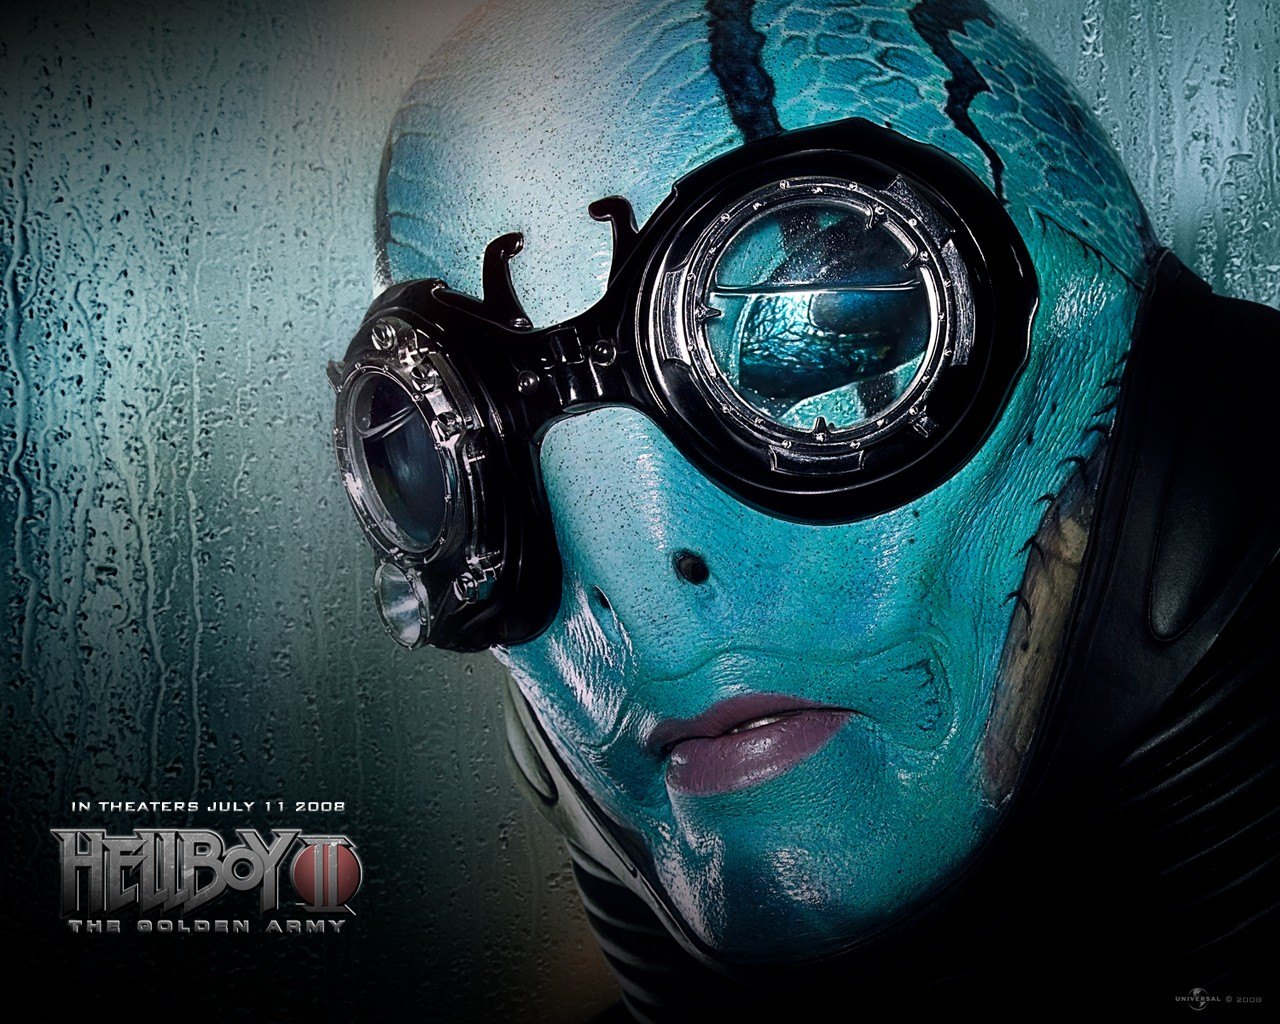 Hellboy2-Kroene_Poster.jpg